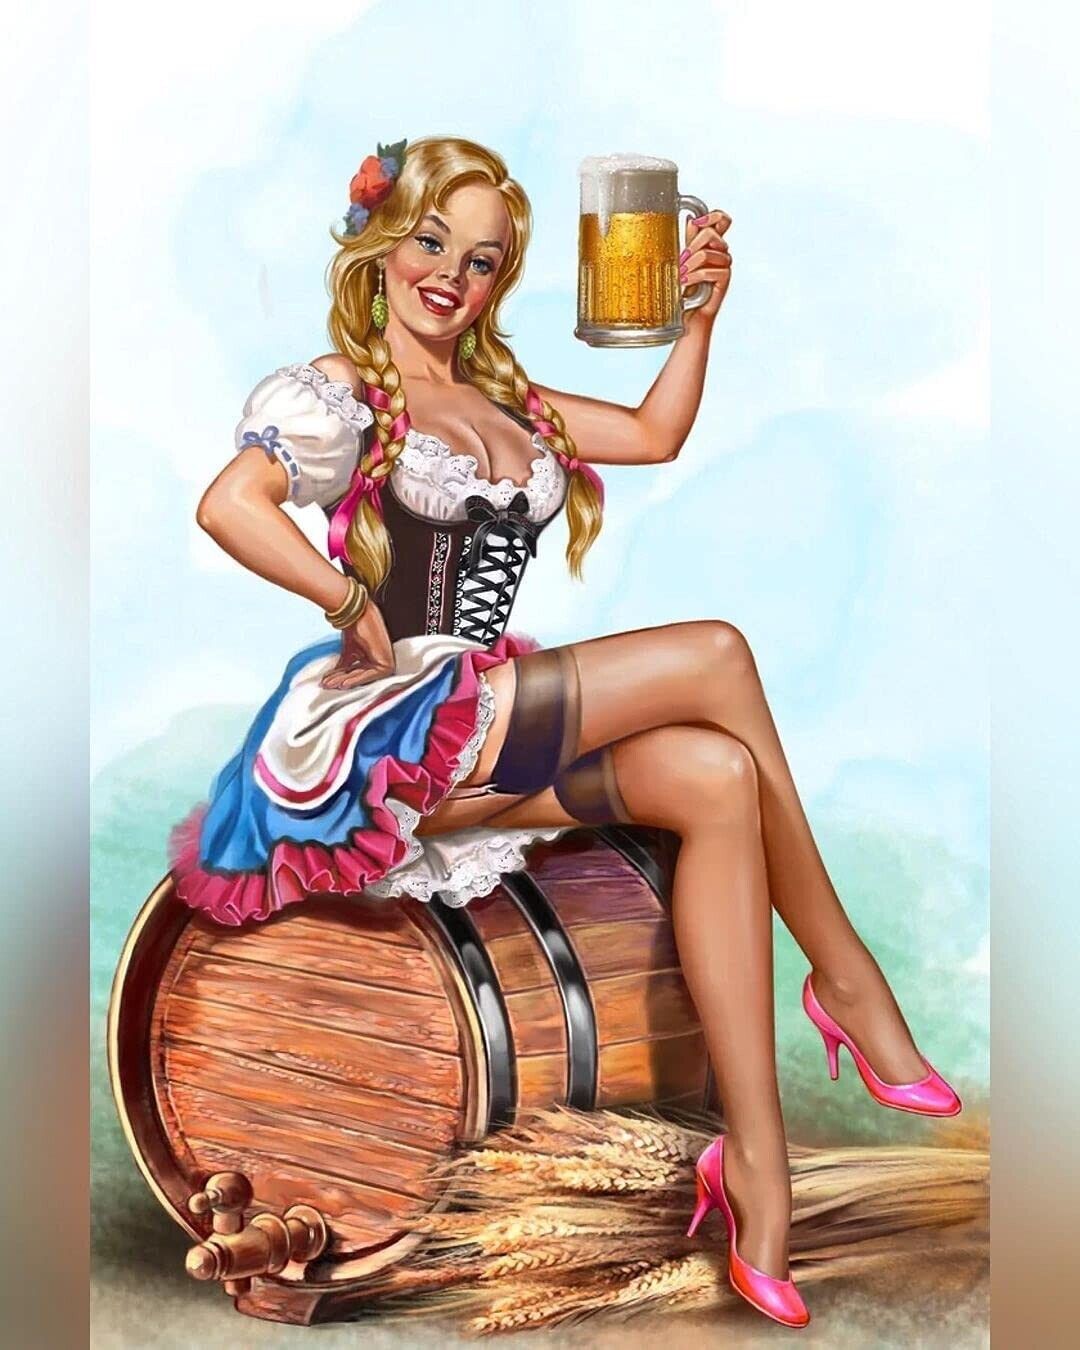 German Bier Girl Beer Haus Garden Octoberfest Bar Pub Metal Sign 8 x 12 Inches